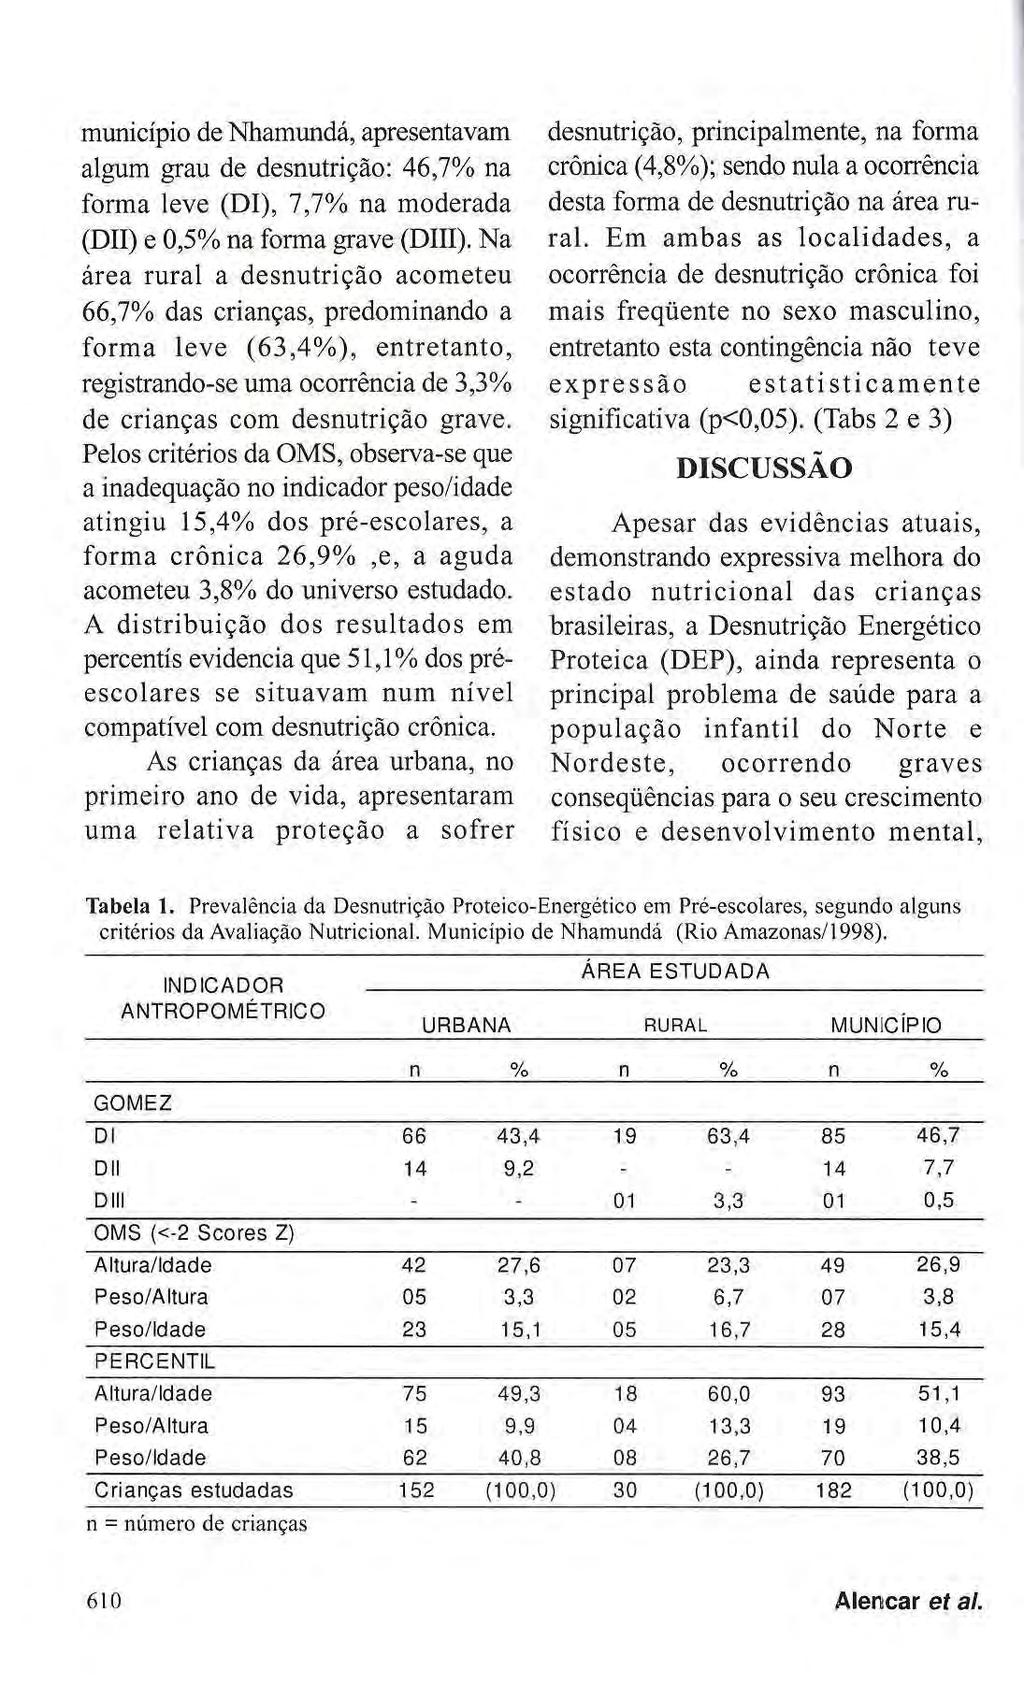 município de Nhamundá, apresentavam algum grau de desnutrição: 46,7% na forma leve (Dl), 7,7% na moderada (DII) e 0,5% na forma grave (DIII).